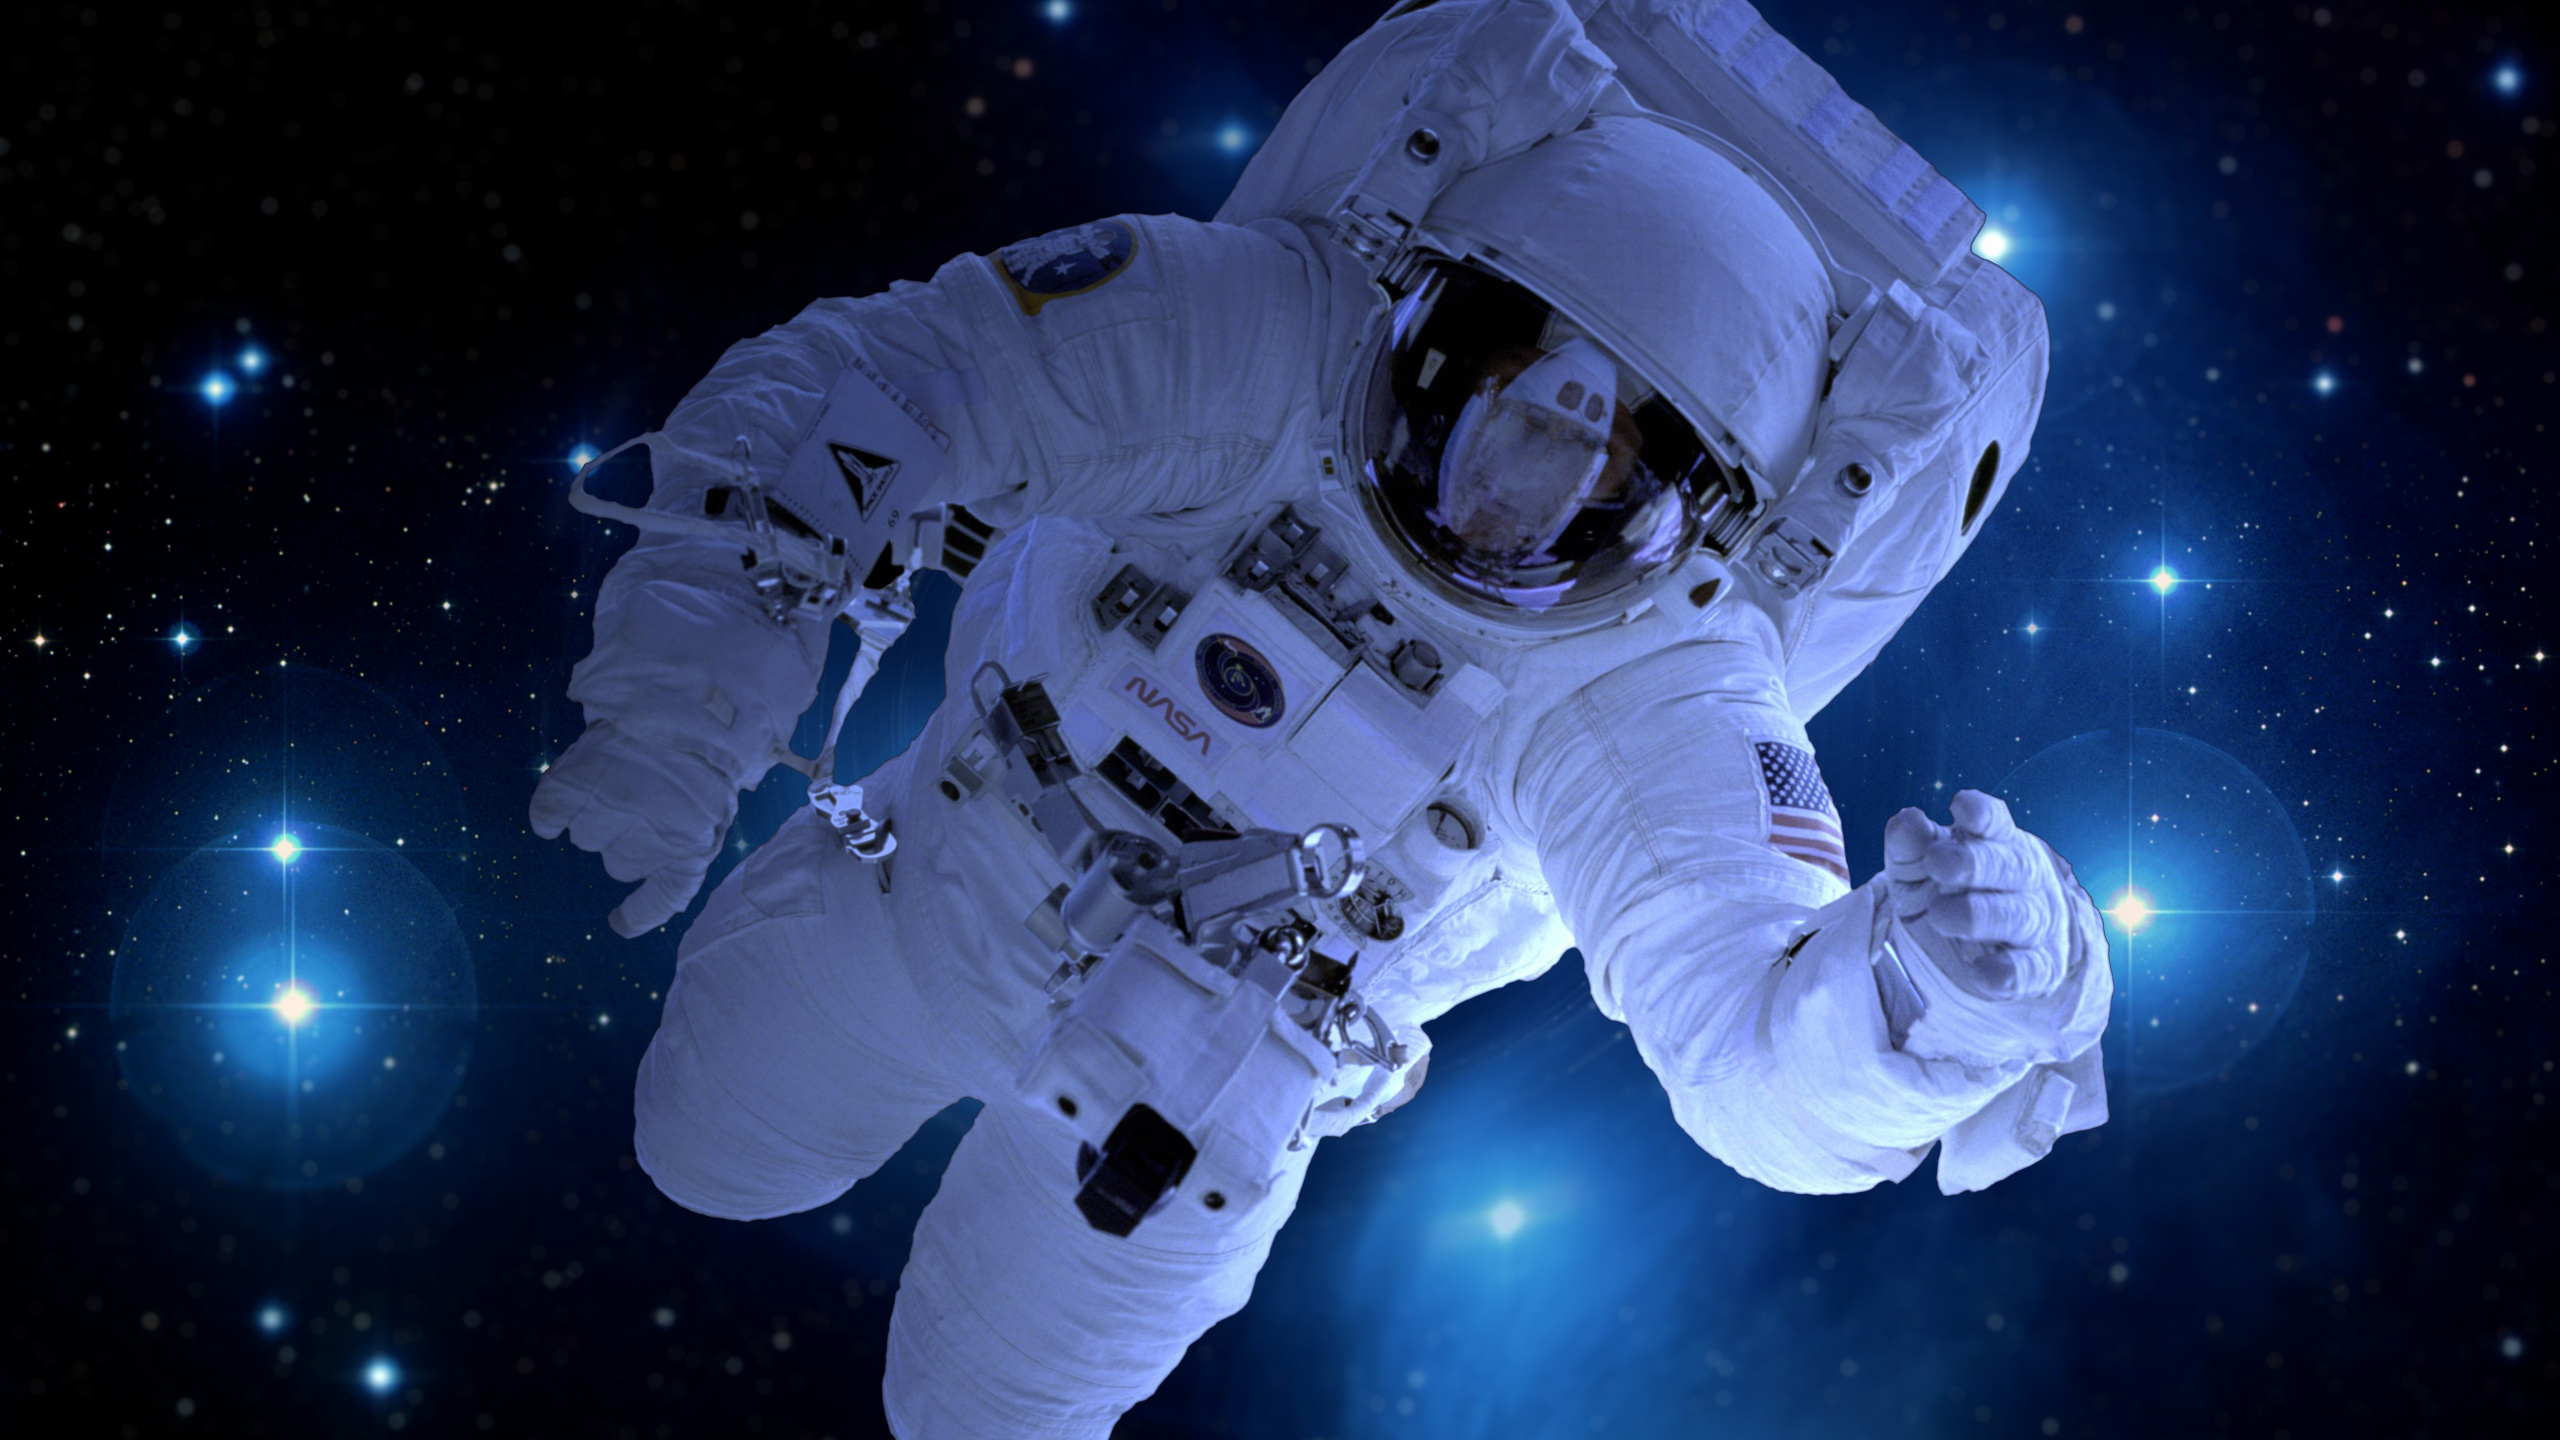 宇航员, 国际空间站, 外层空间, 美国宇航局, 空间探索 壁纸 2560x1440 允许